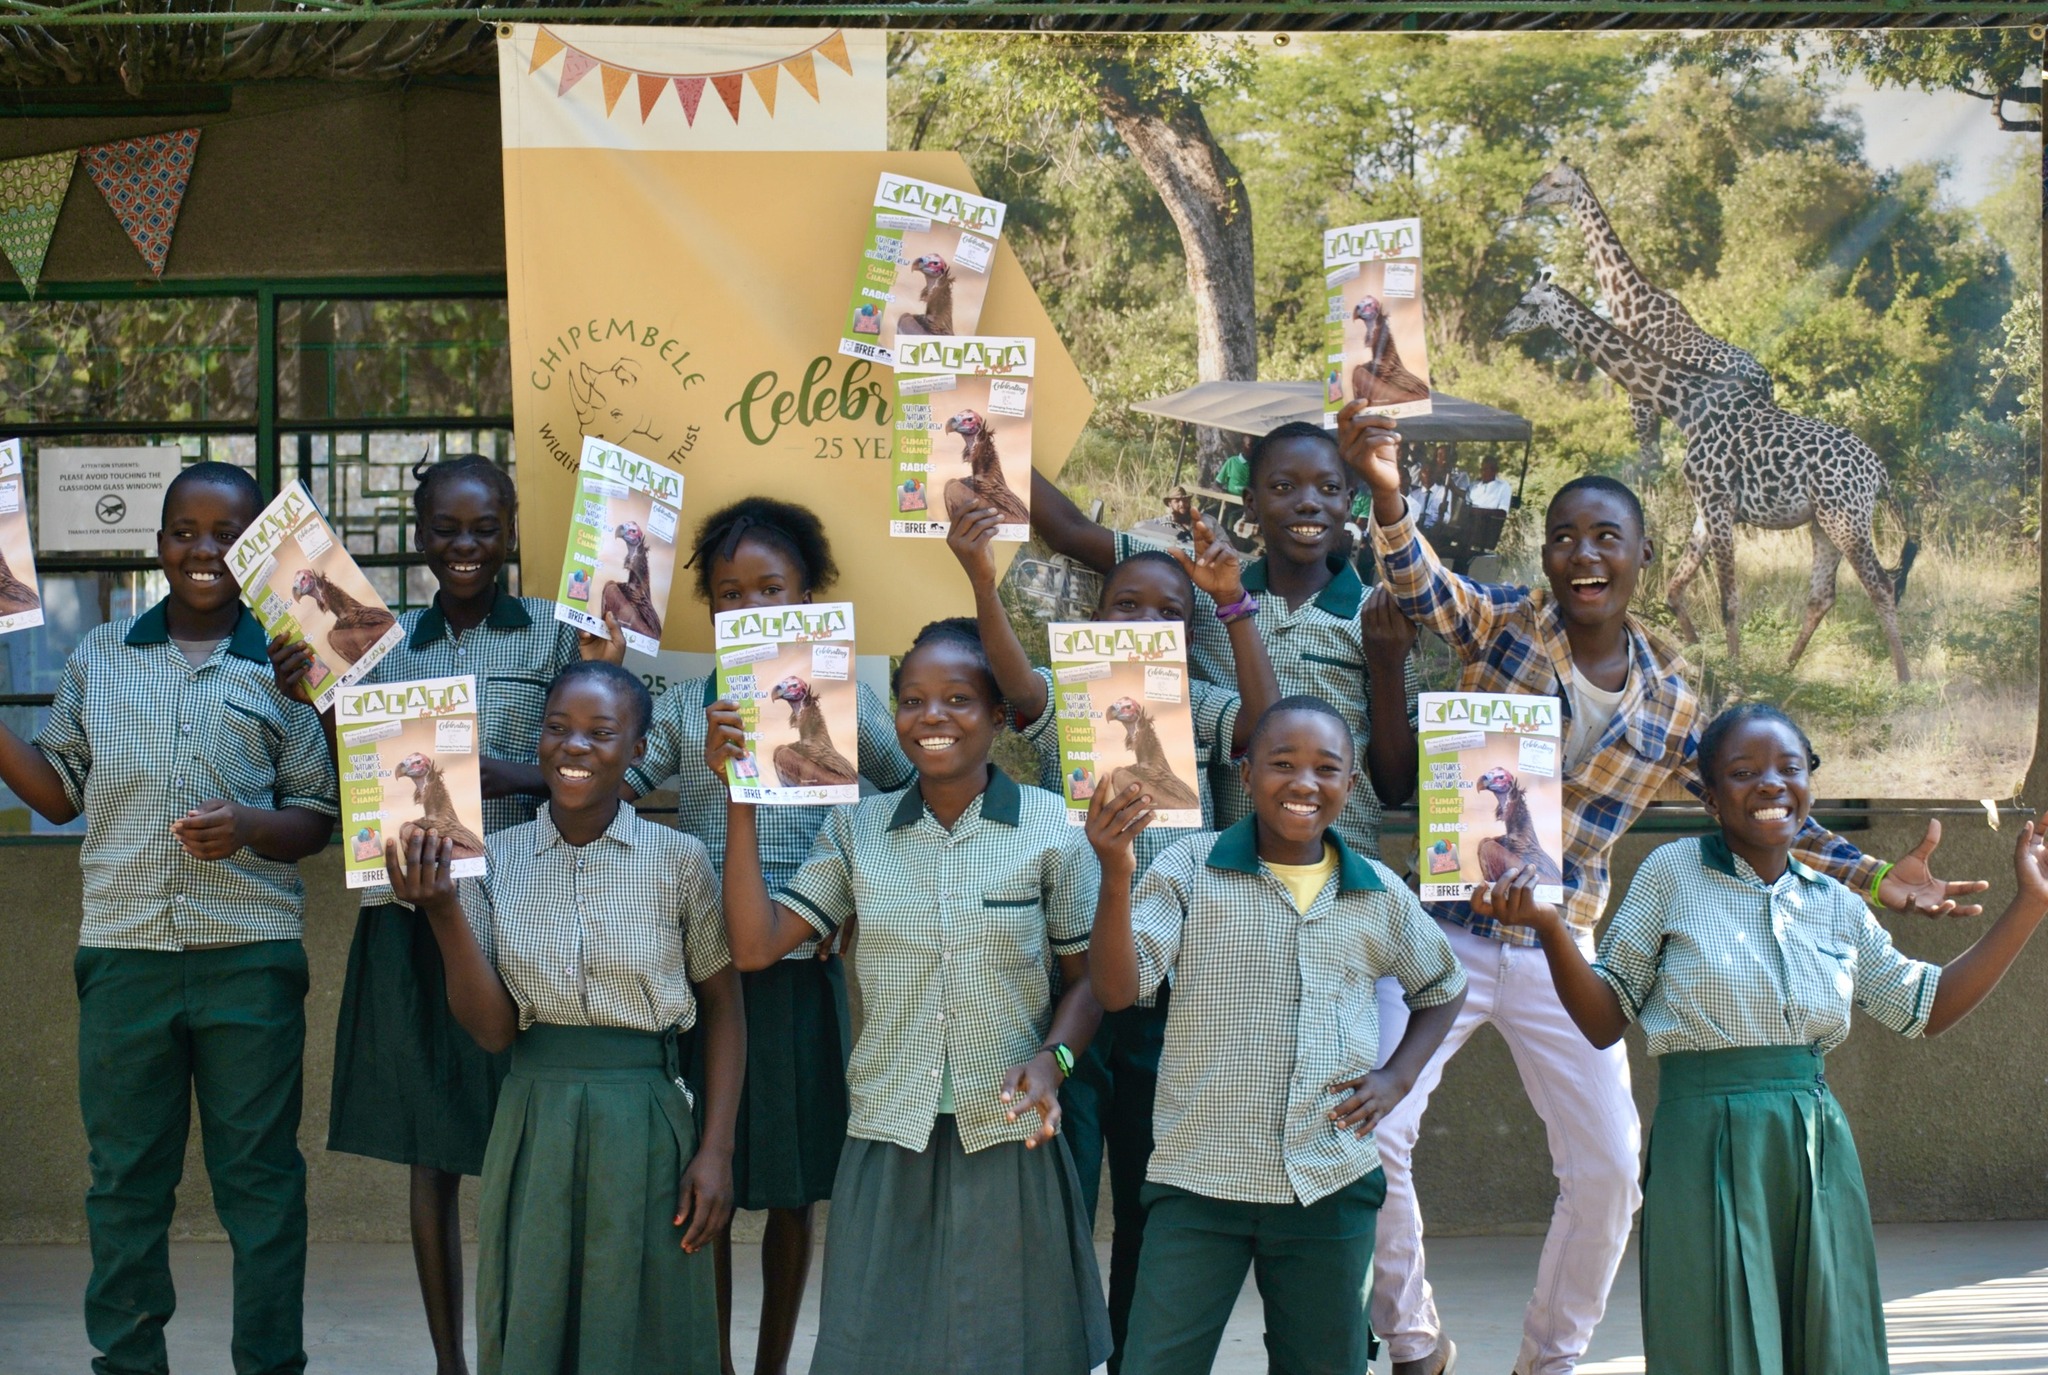 Bildquelle Chipembele Wildlife Education Trust, 
Schüler und Schülerinnen von Chipembele Wildlife Education Trust halten die Geierausgabe des Jugendmagazins Kalata in die Kamera.
